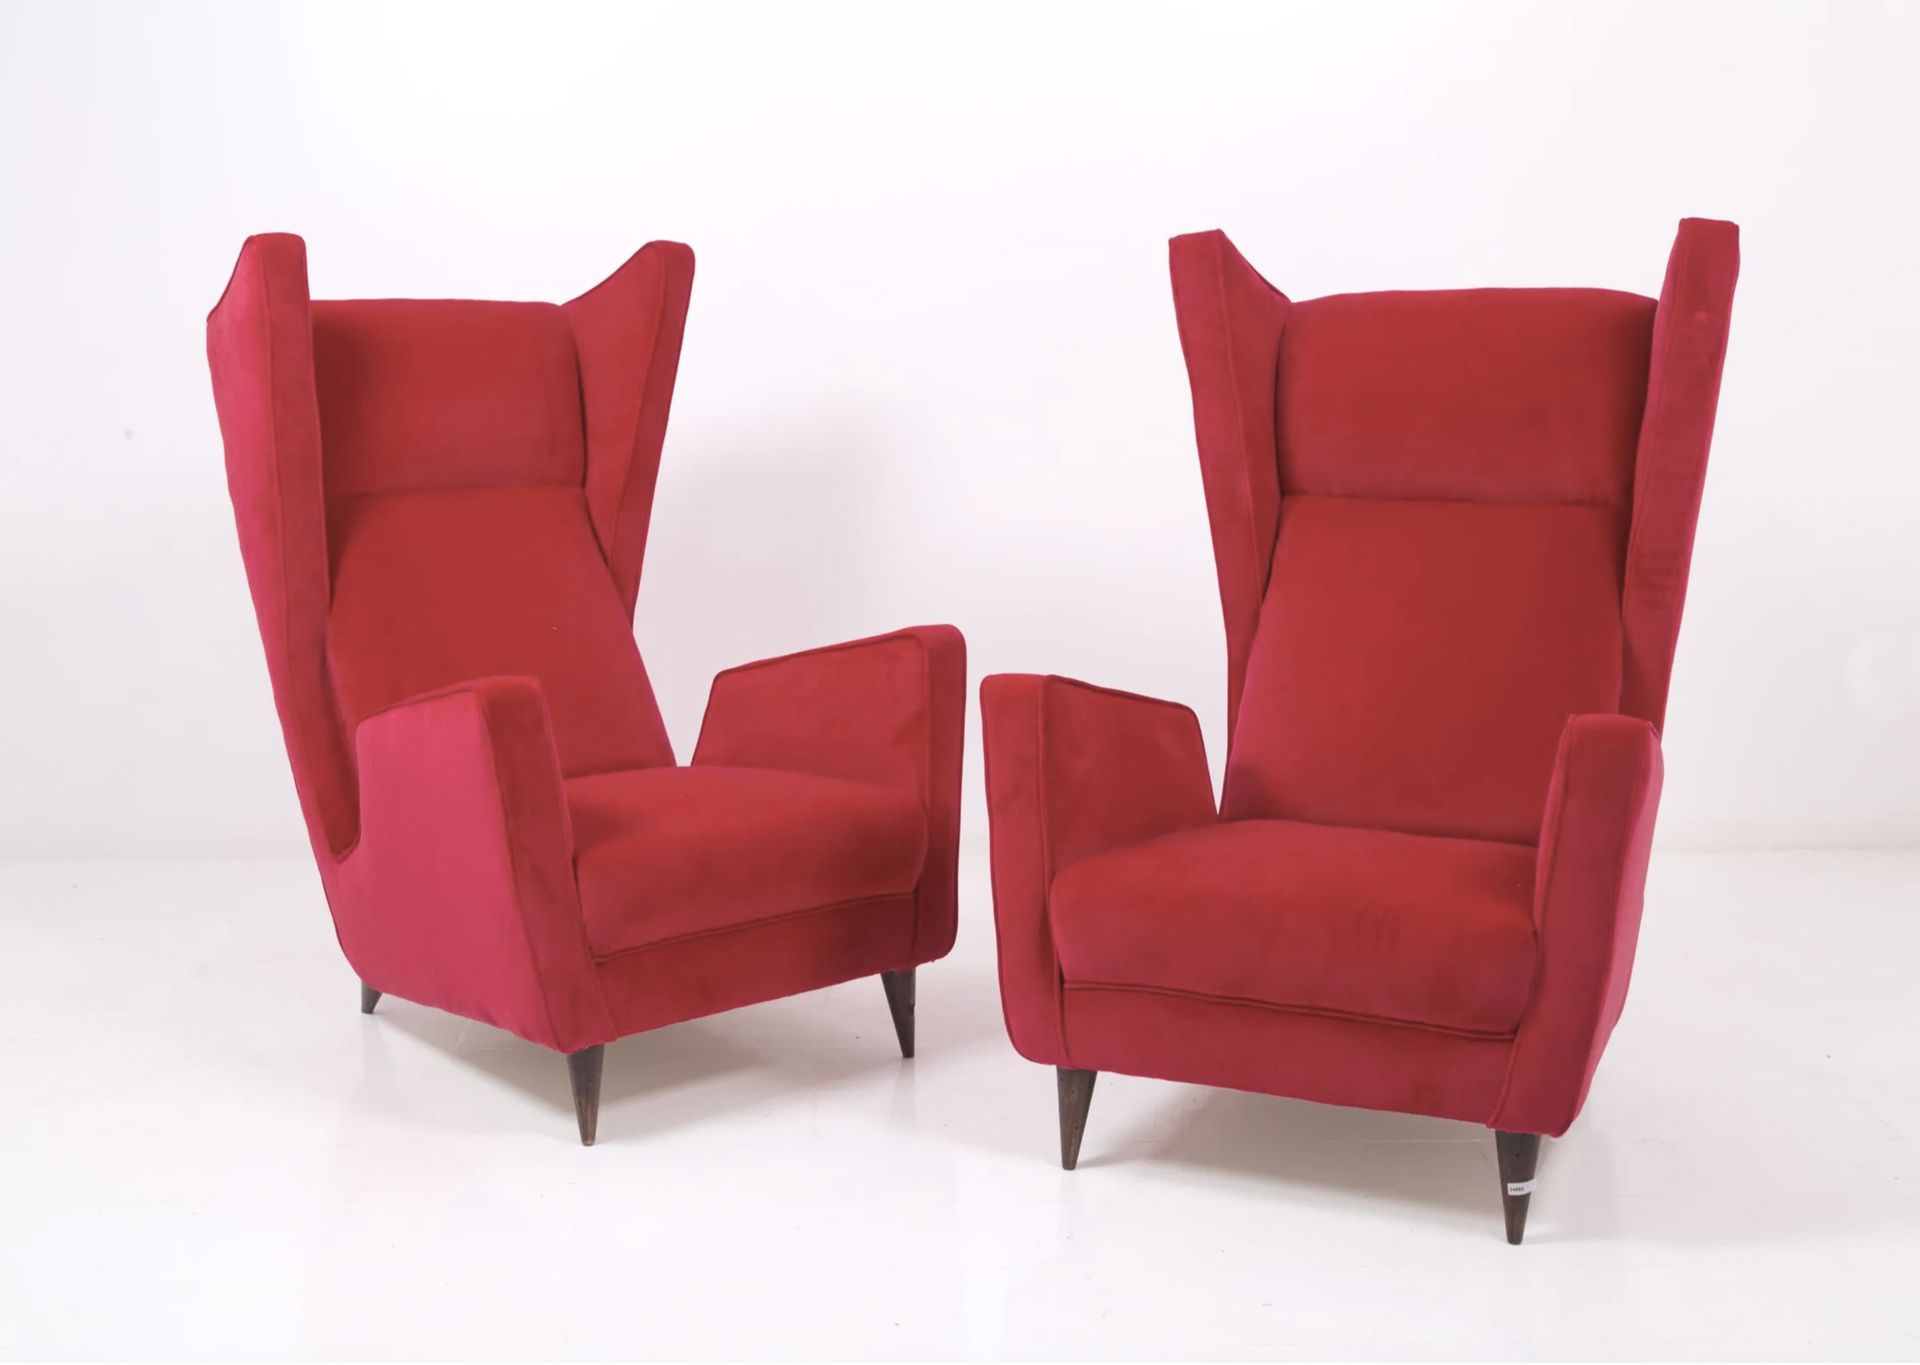 MARIO OREGLIA. Two red armchairs. 1940s MARIO OREGLIA (Fossano, 1916 - Turín, 19&hellip;